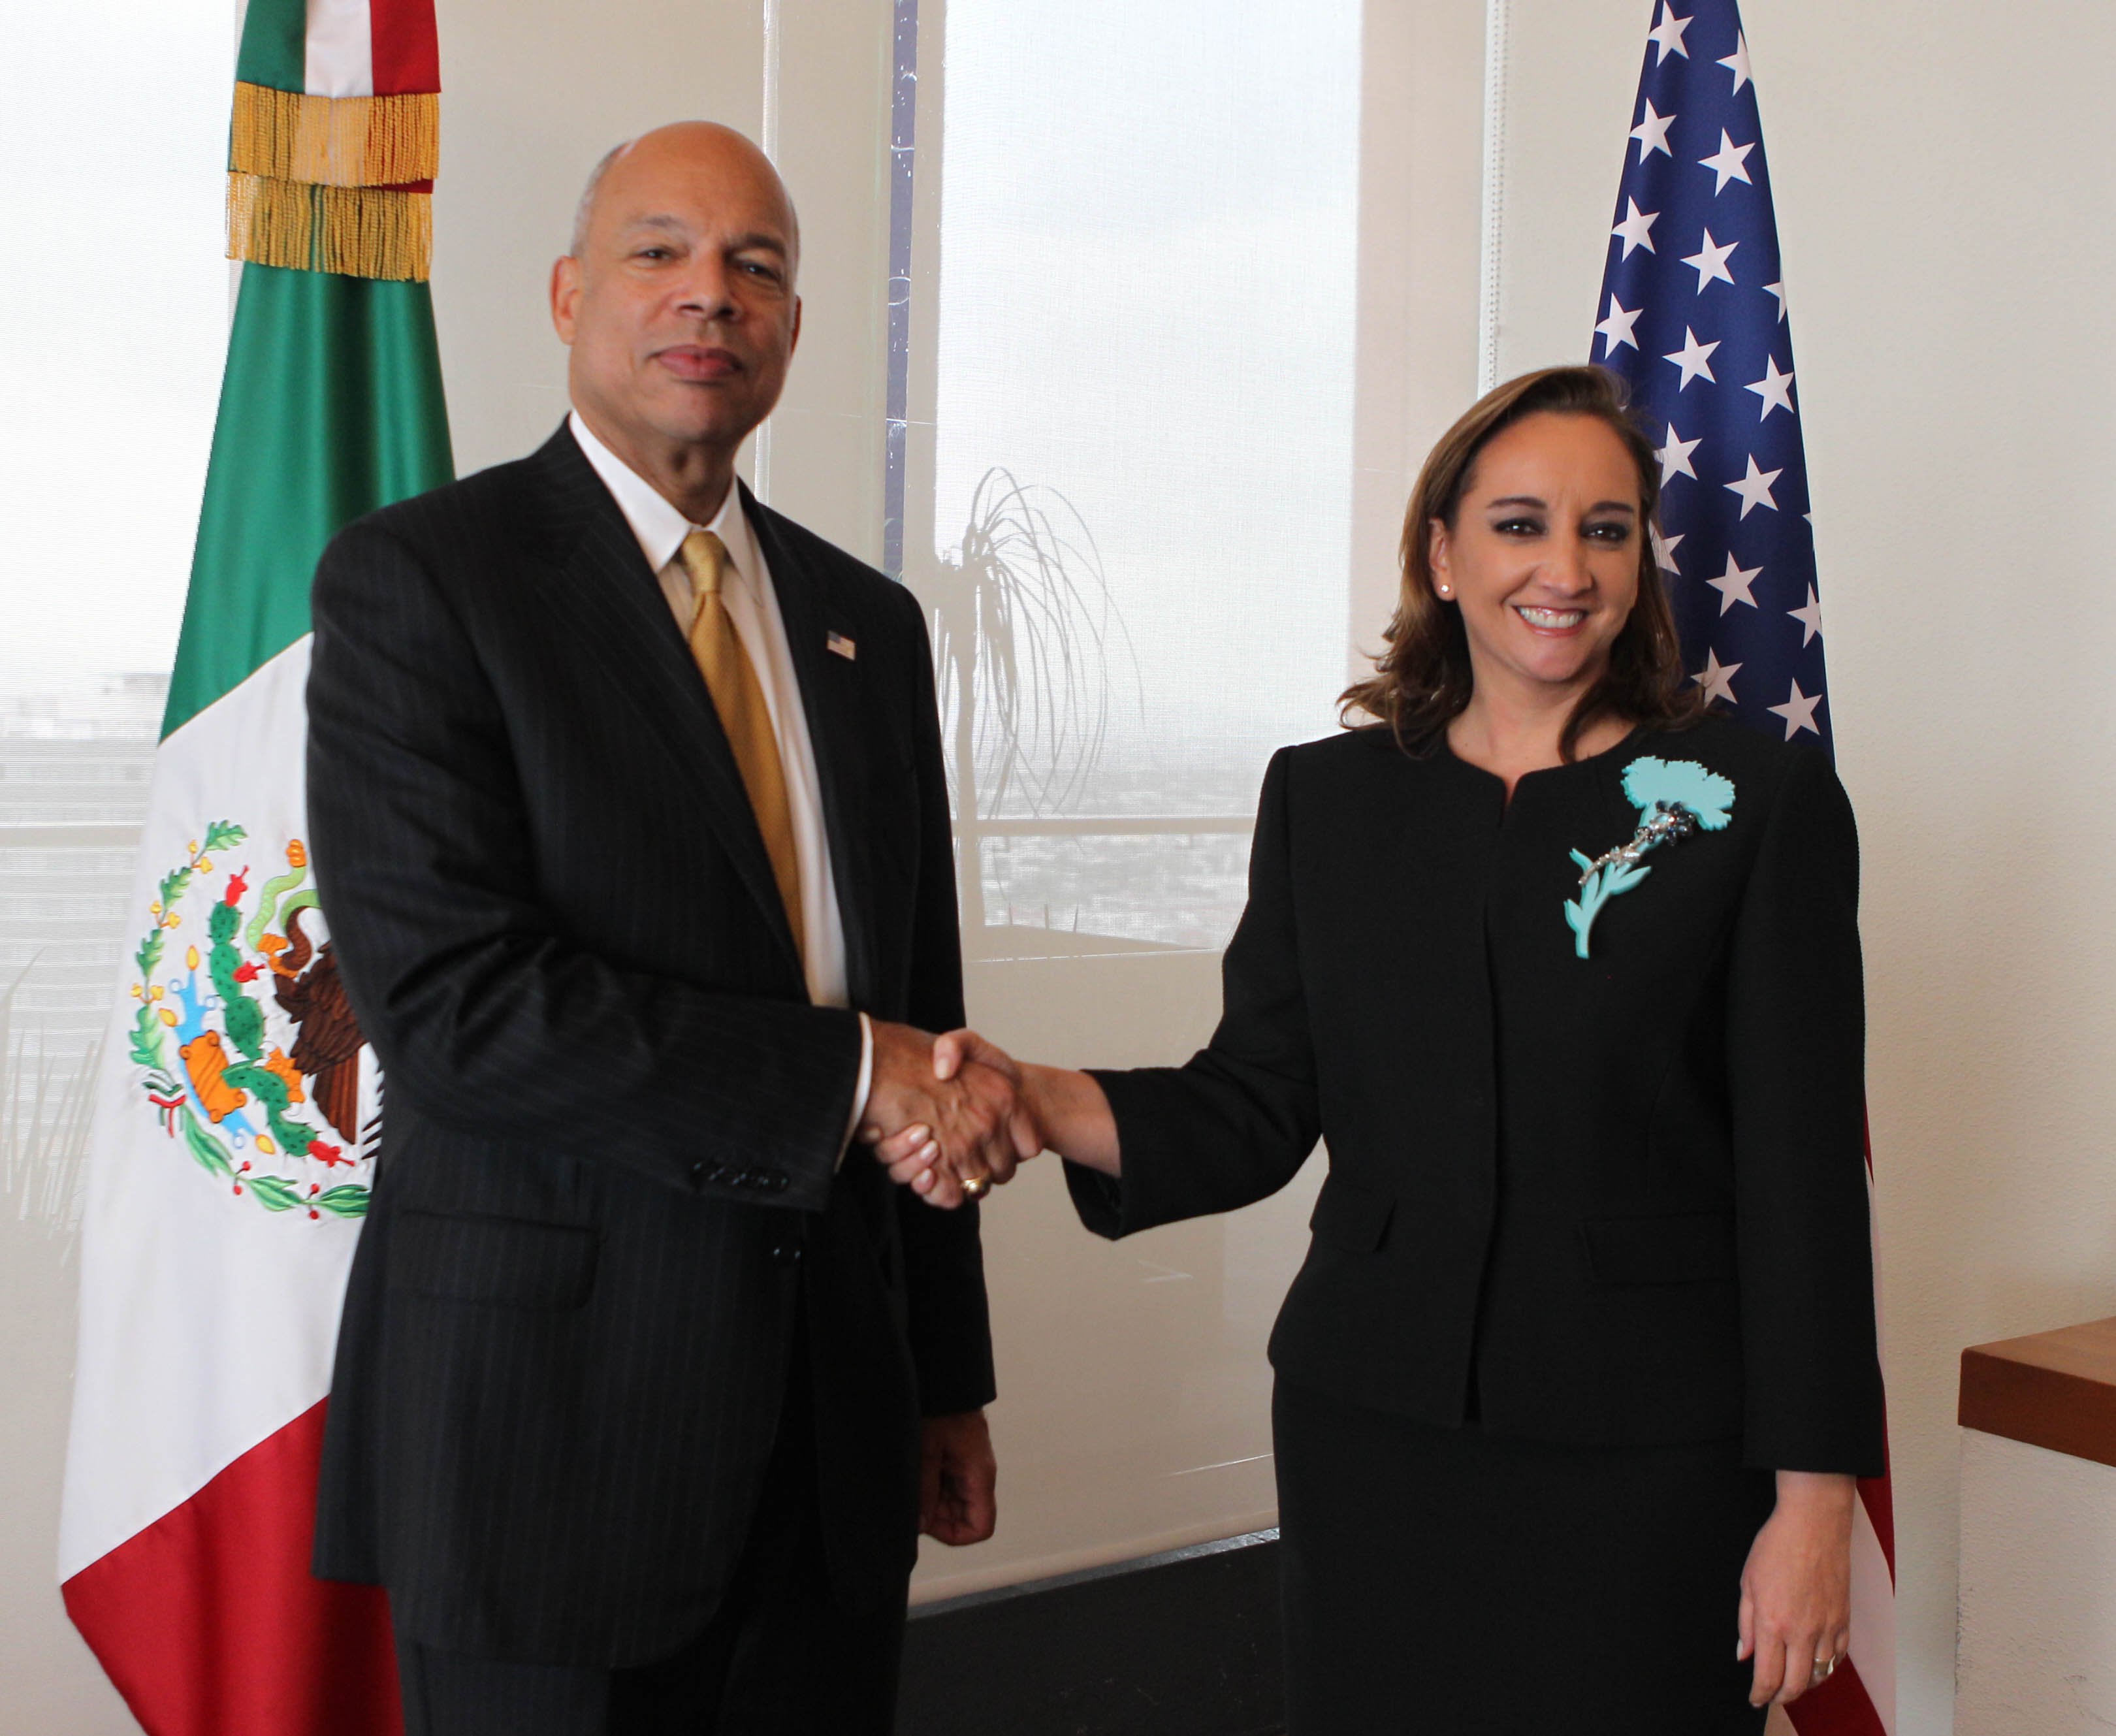 FOTO Canciller Claudia Ruiz Massieu con el Secretario de Seguridad Interna de Estados Unidos Jeh Johnson.jpg